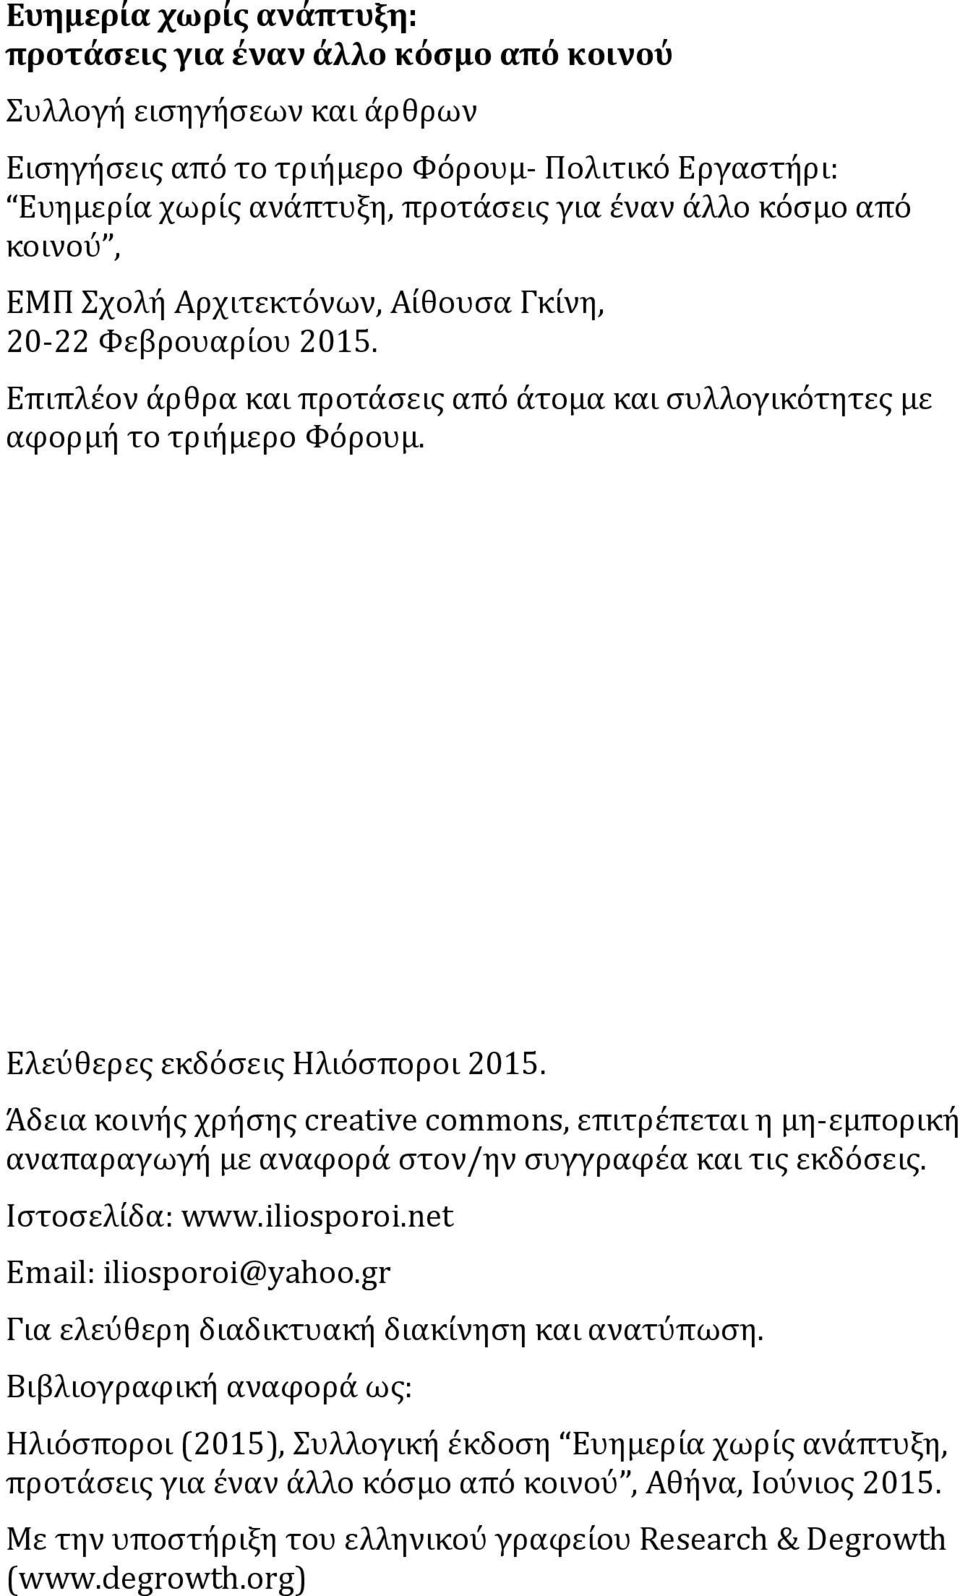 Ελεύθερες εκδόσεις Ηλιόσποροι 2015. Άδεια κοινής χρήσης creative commons, επιτρέπεται η μη-εμπορική αναπαραγωγή με αναφορά στον/ην συγγραφέα και τις εκδόσεις. Ιστοσελίδα: www.iliosporoi.